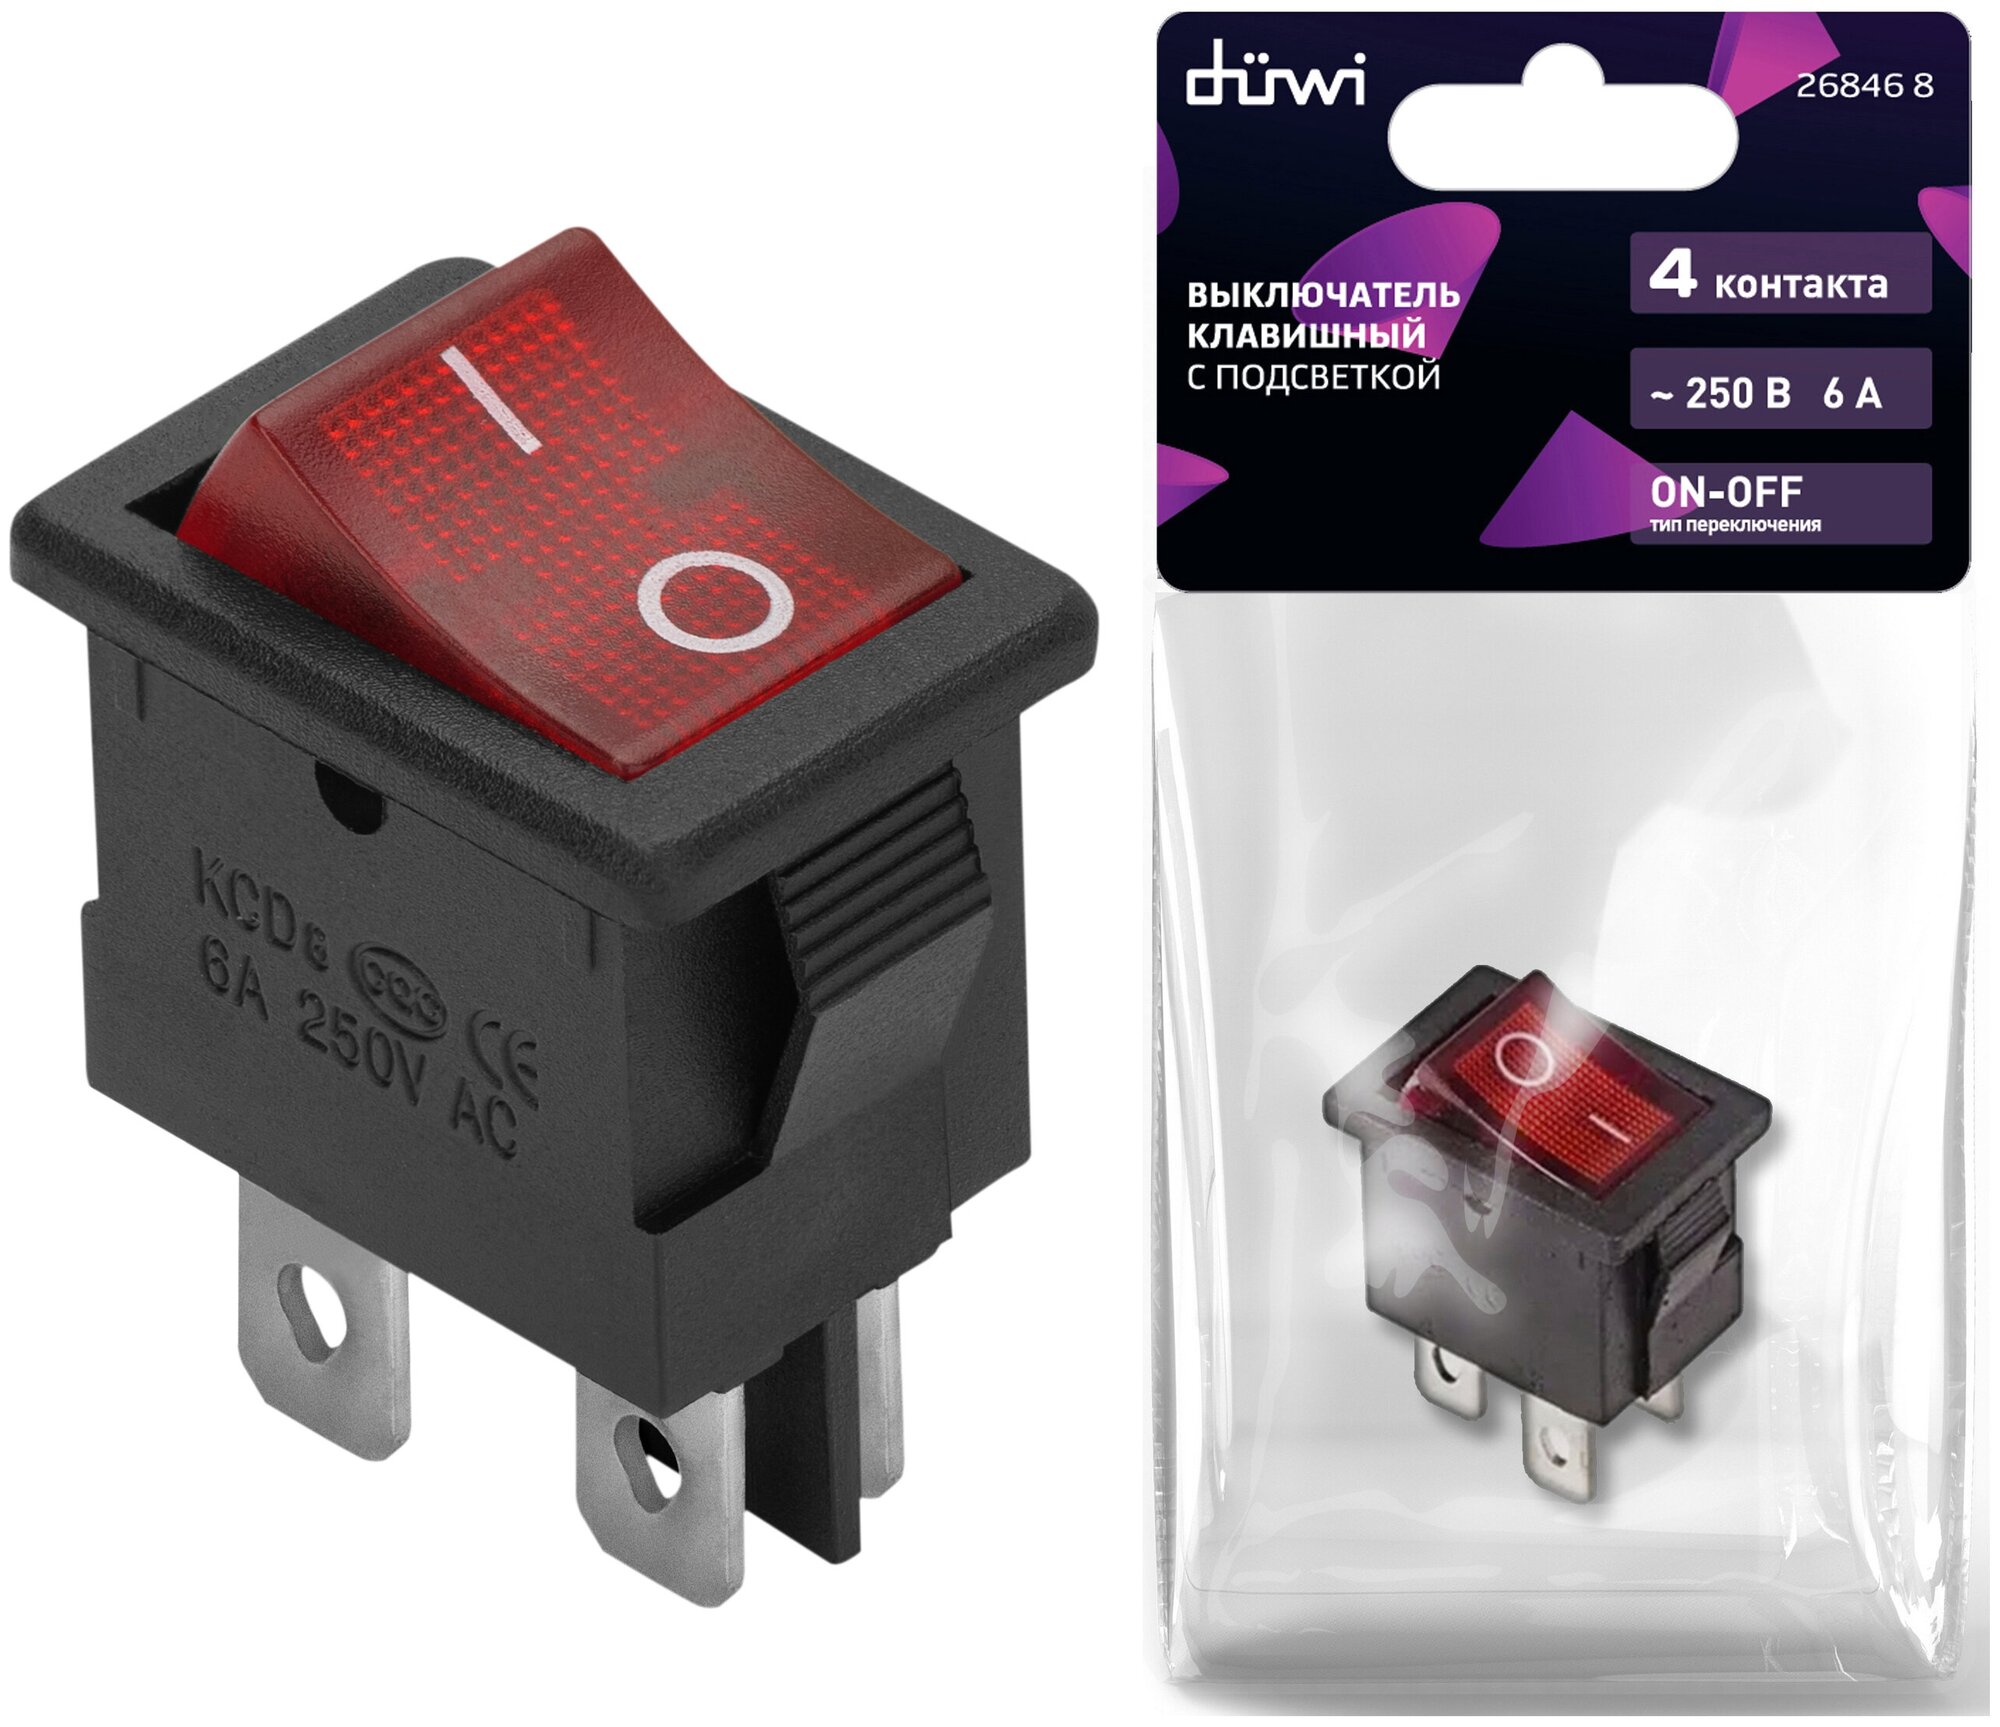 Выключатель клавишный красный с подсветкой вкл-выкл 4 контакта 250В 6А прямоугольный duwi 26846 8 - фотография № 1